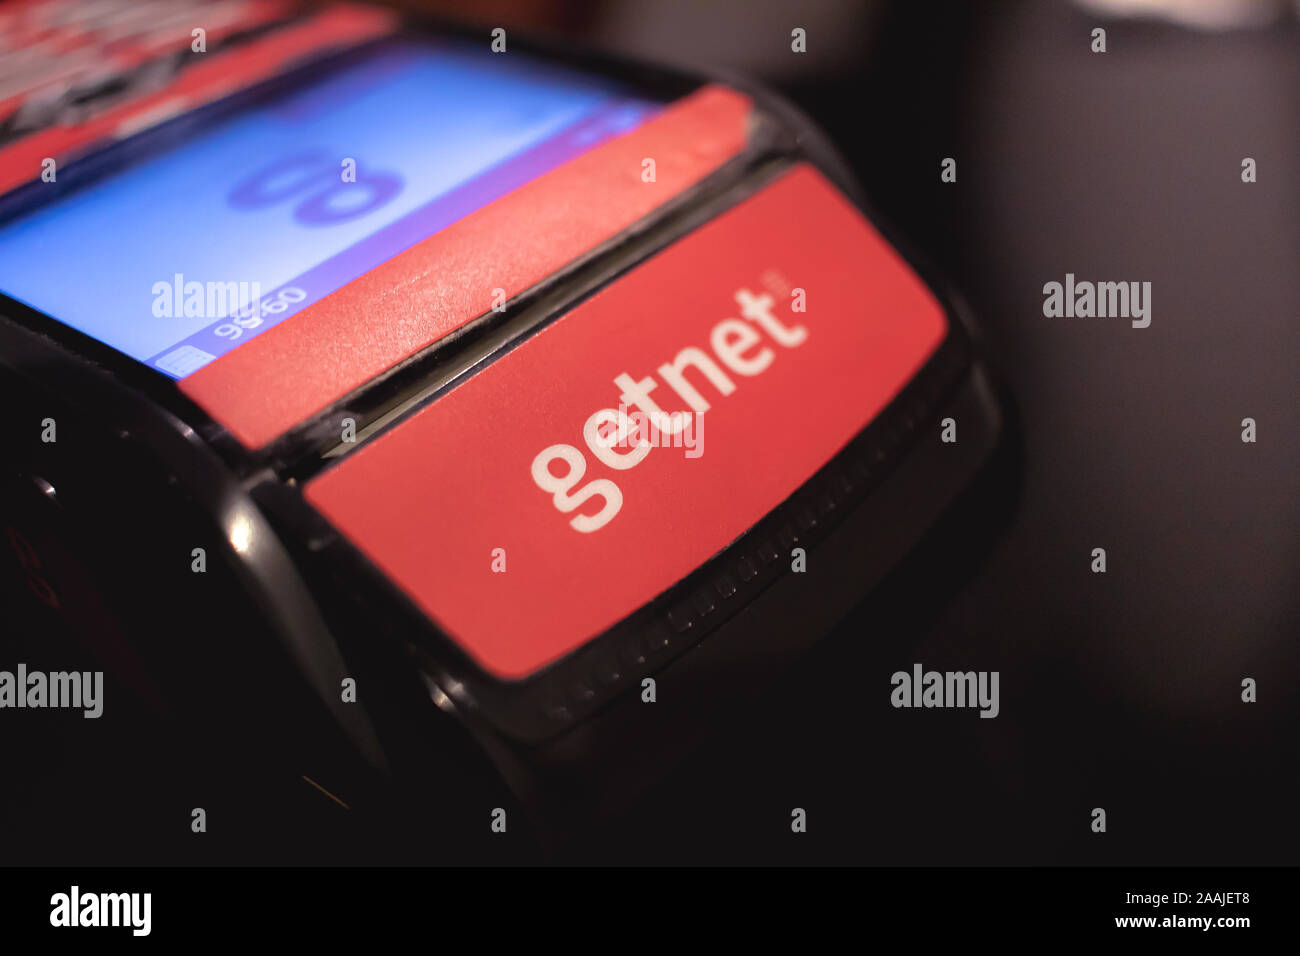 Getnet: Meet our Getnet Smart POS 